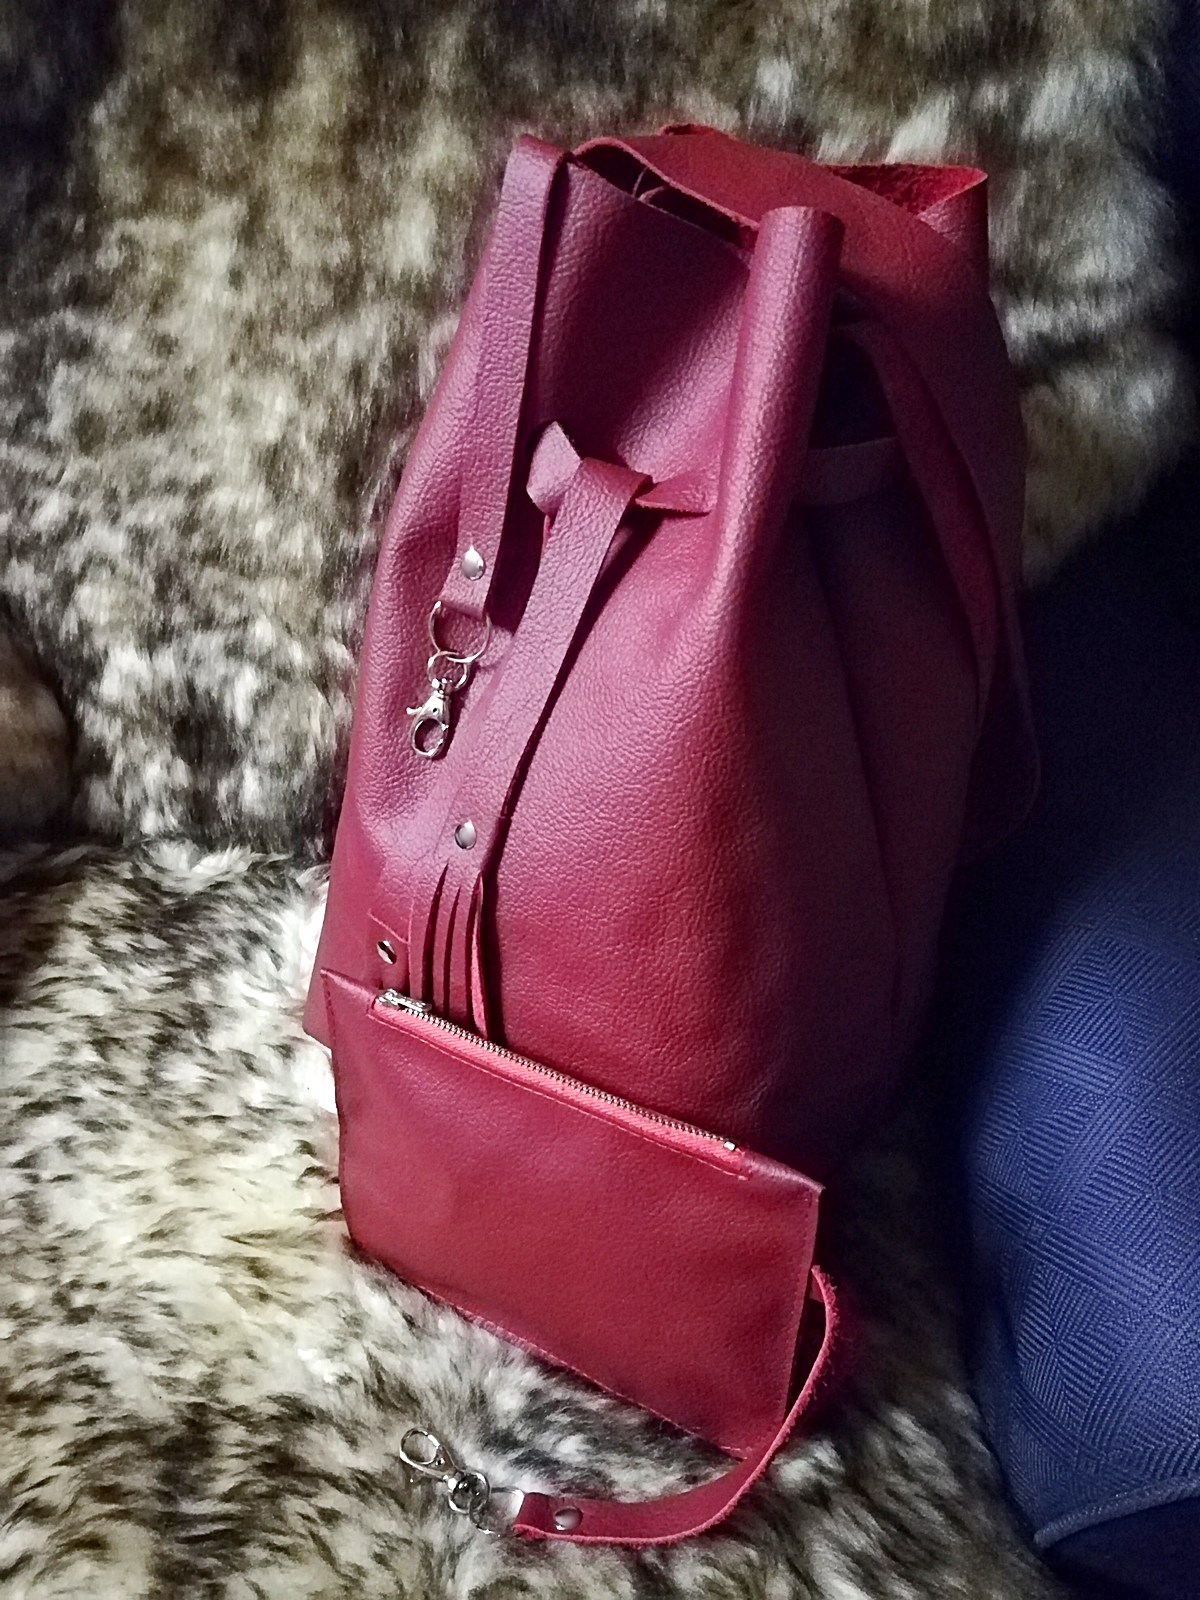 Bucket-Bag Handtasche Beuteltasche Schultertasche Leder kirschrot - MONDSPINNE Ledertaschenmanufaktur